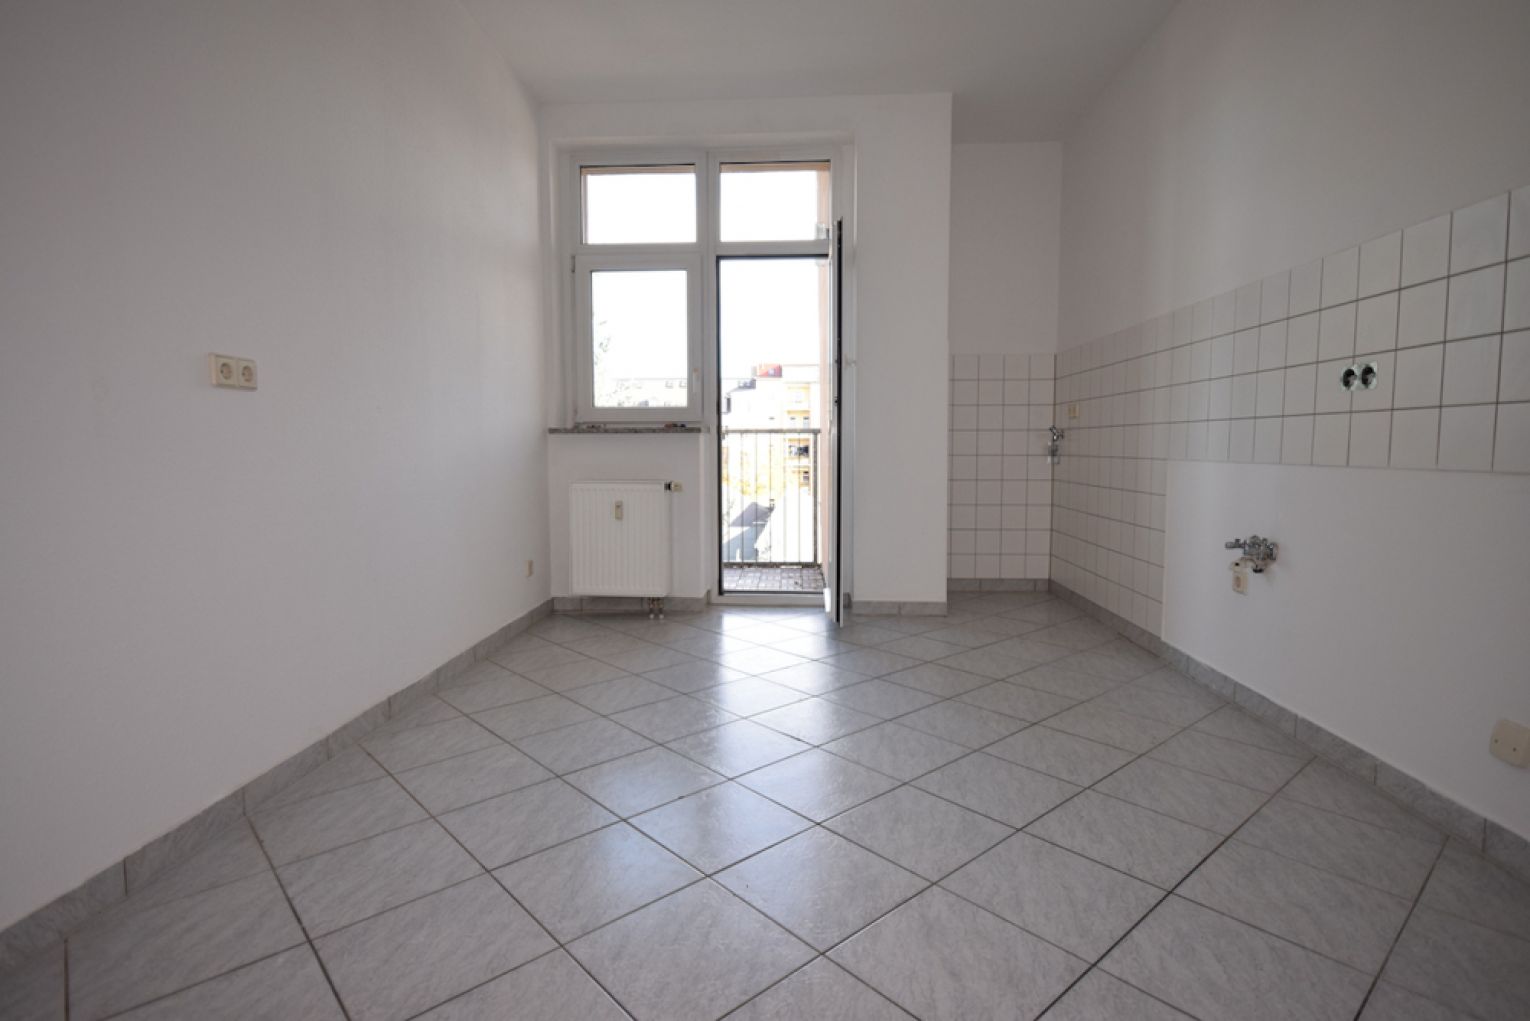 Kaßberg • Balkon • 3 Zimmer • neues Laminat • Bad mit Wanne • Hausgarten • jetzt Mieten